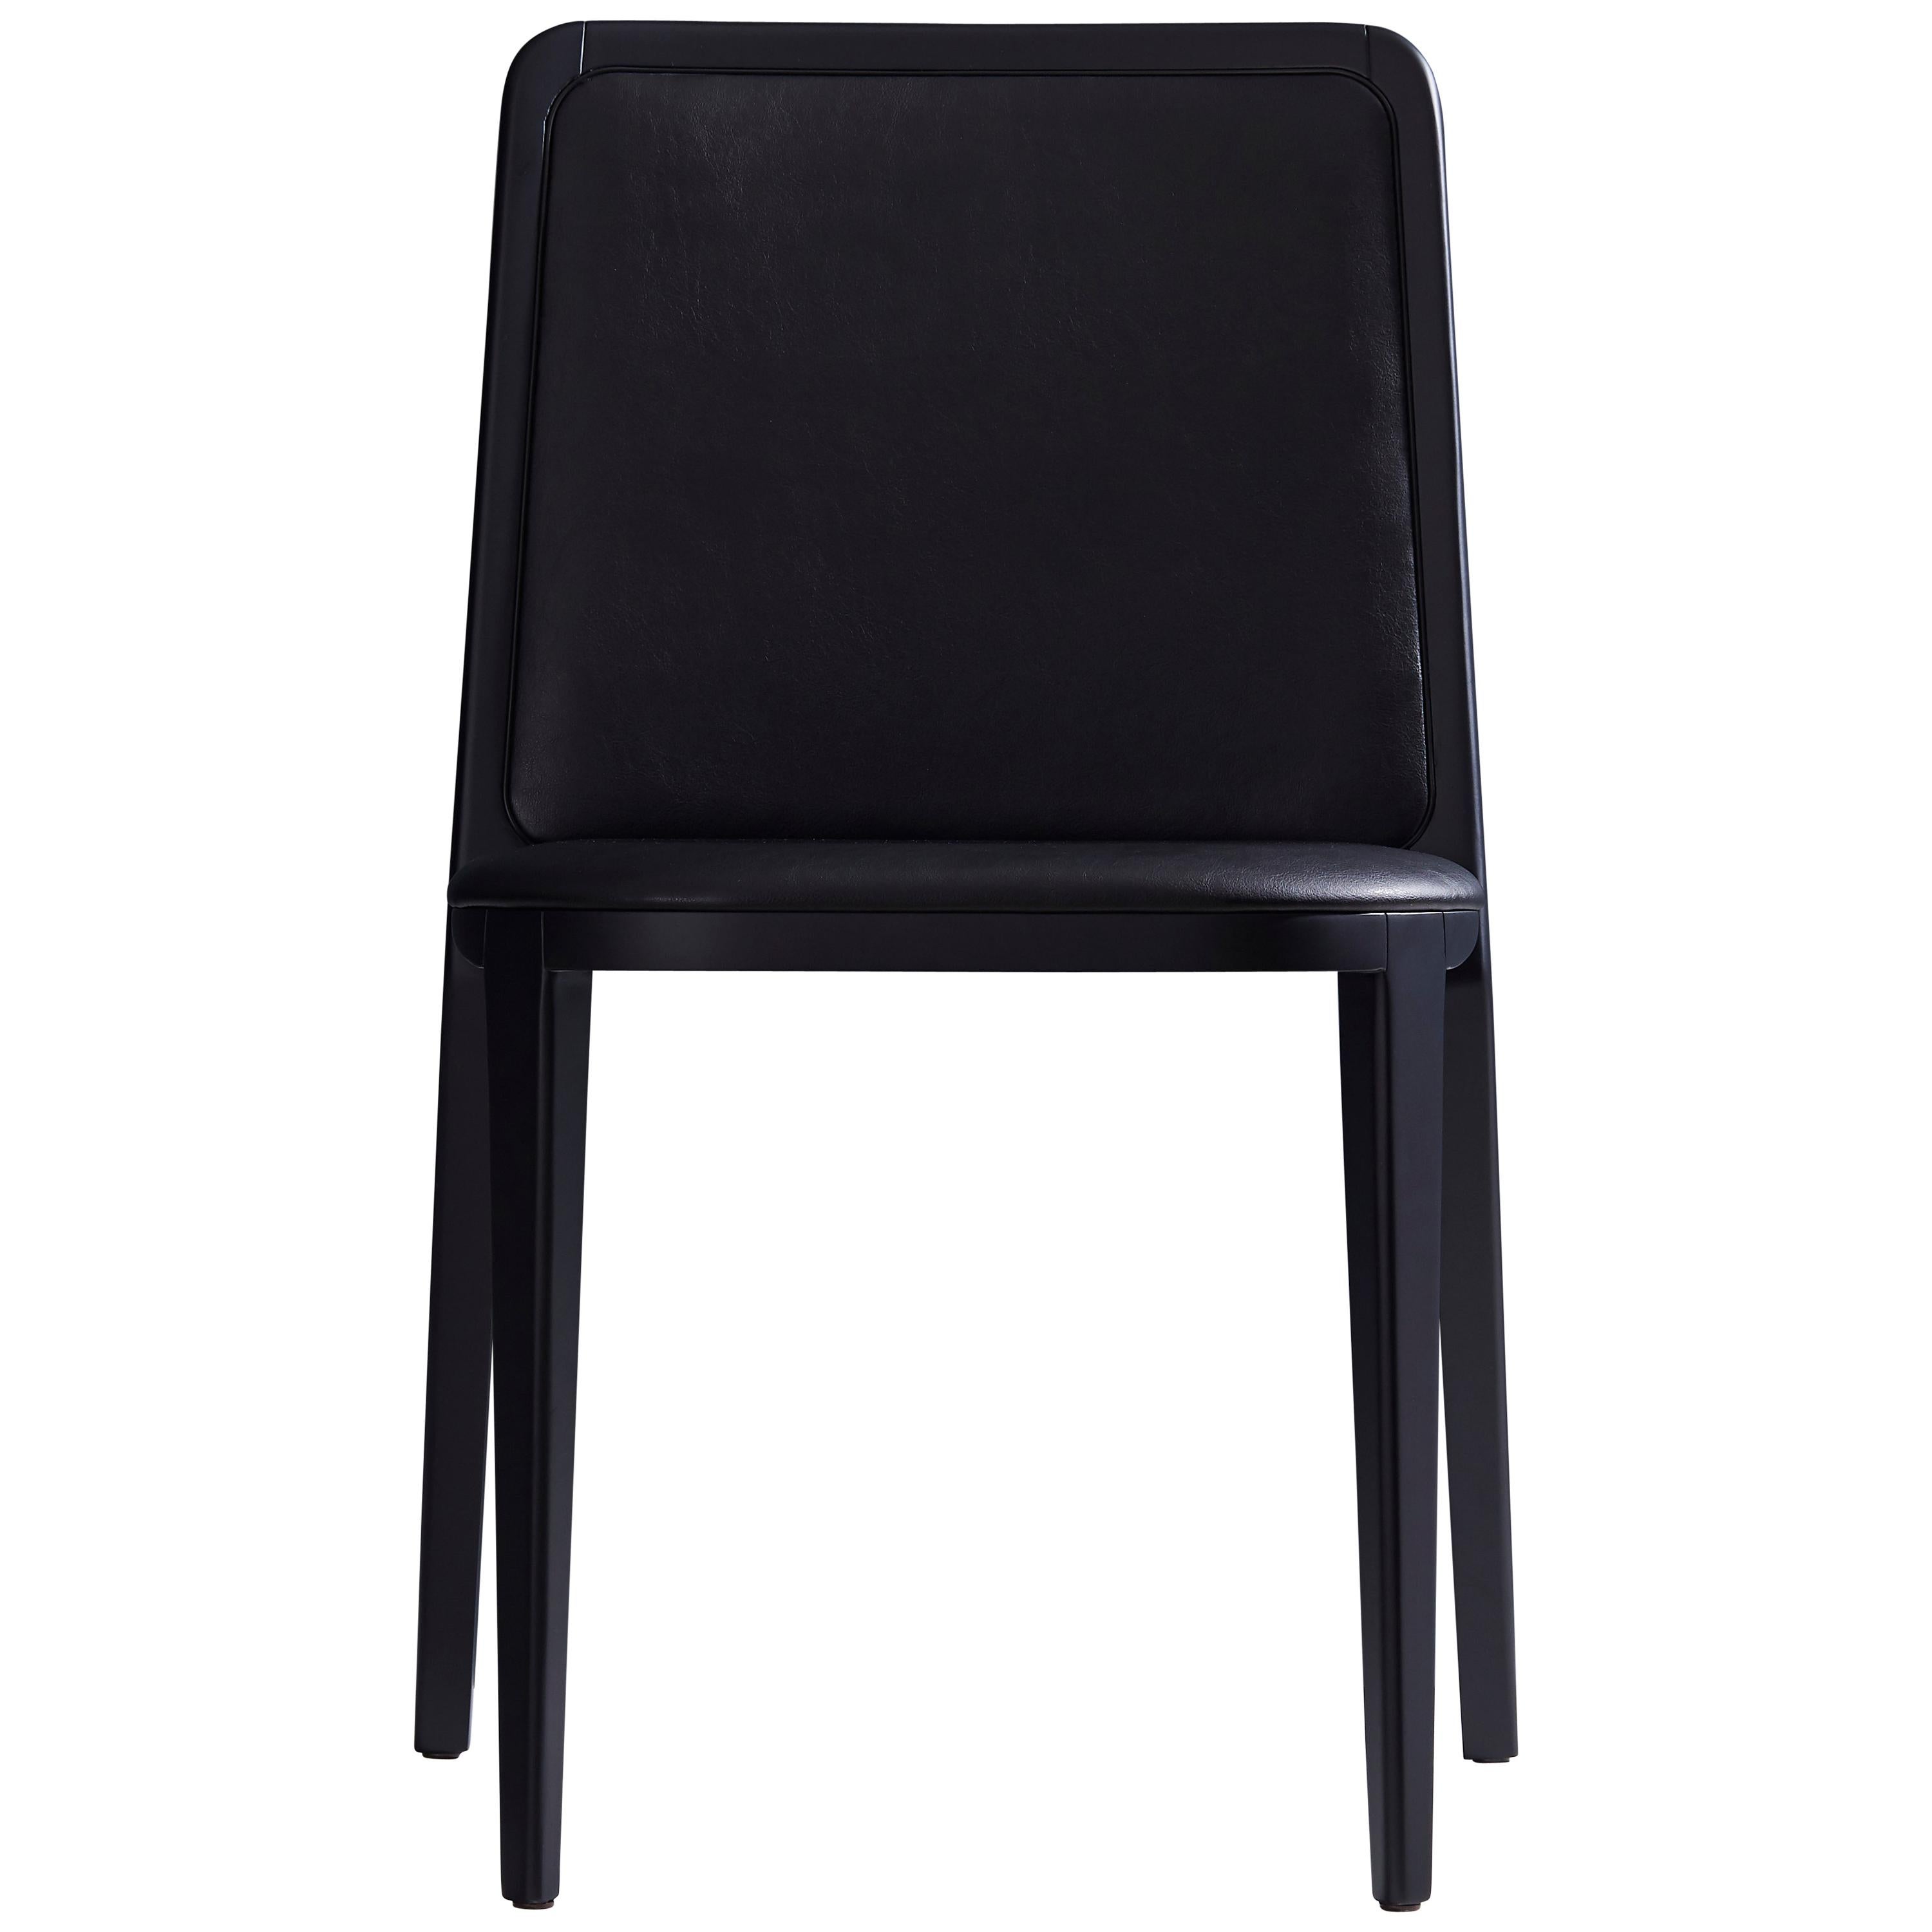 Chaise en bois massif de style minimaliste, siège en cuir, panneau arrière tapissé